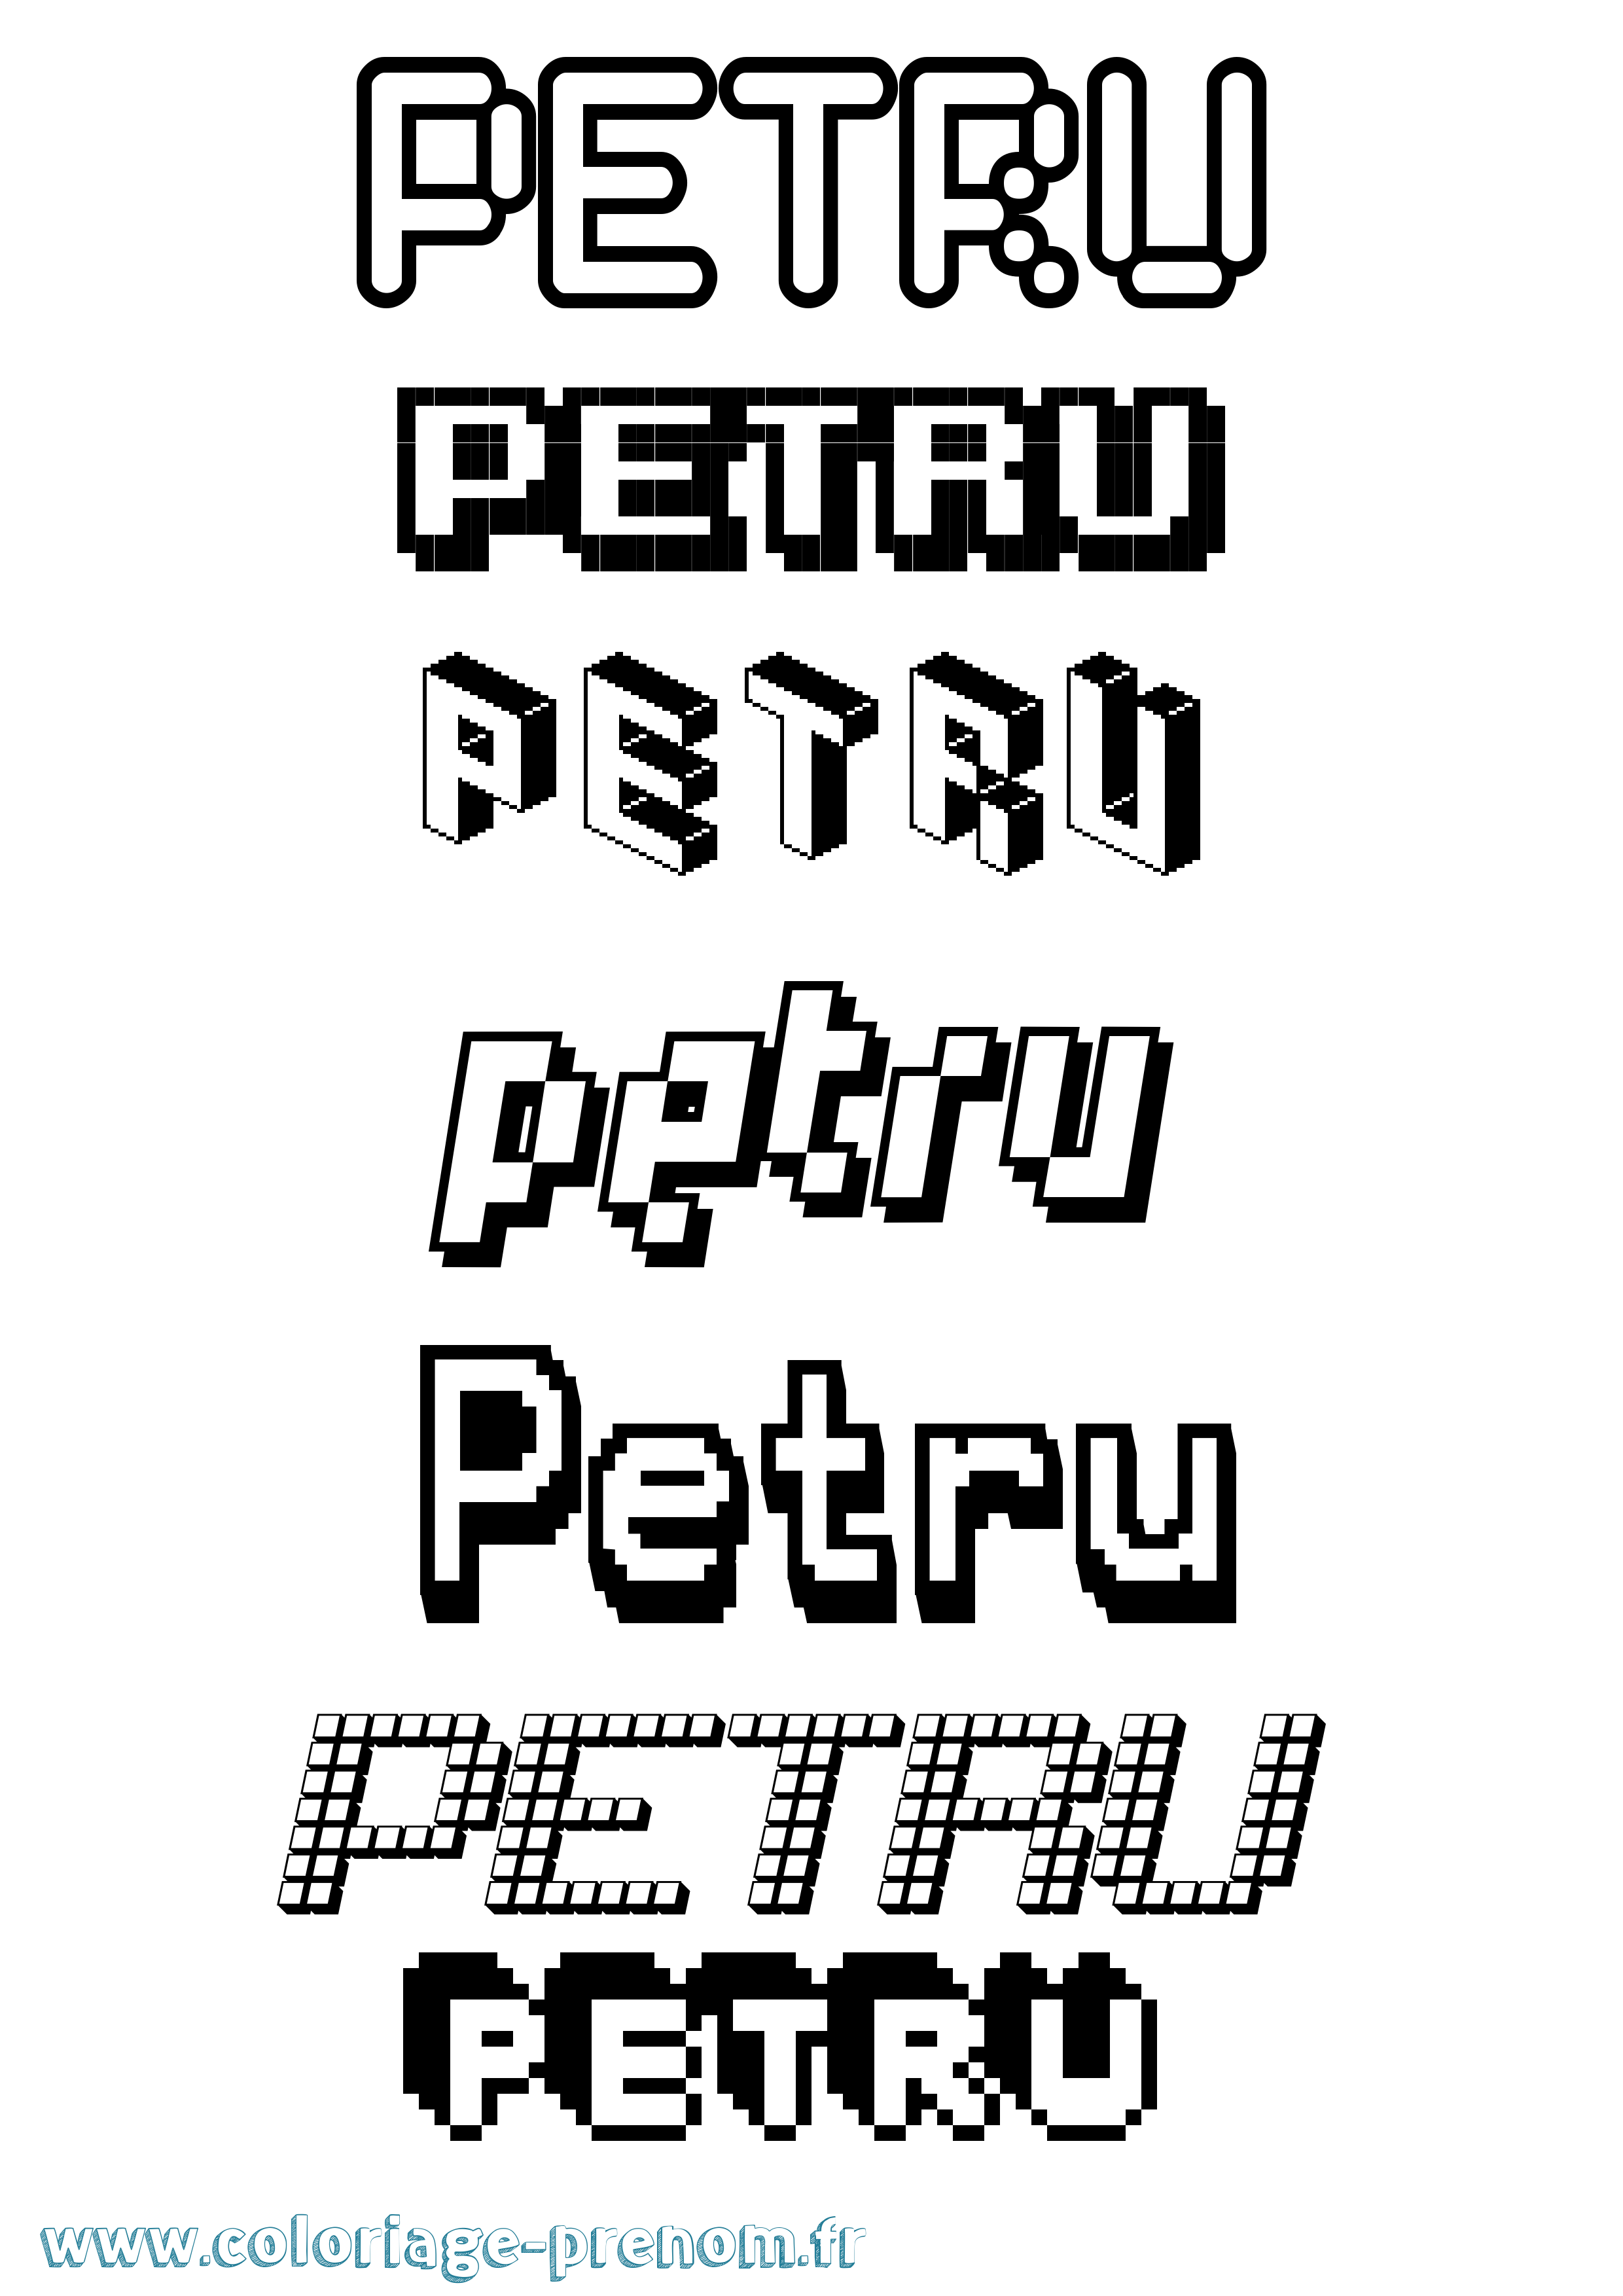 Coloriage prénom Petru Pixel